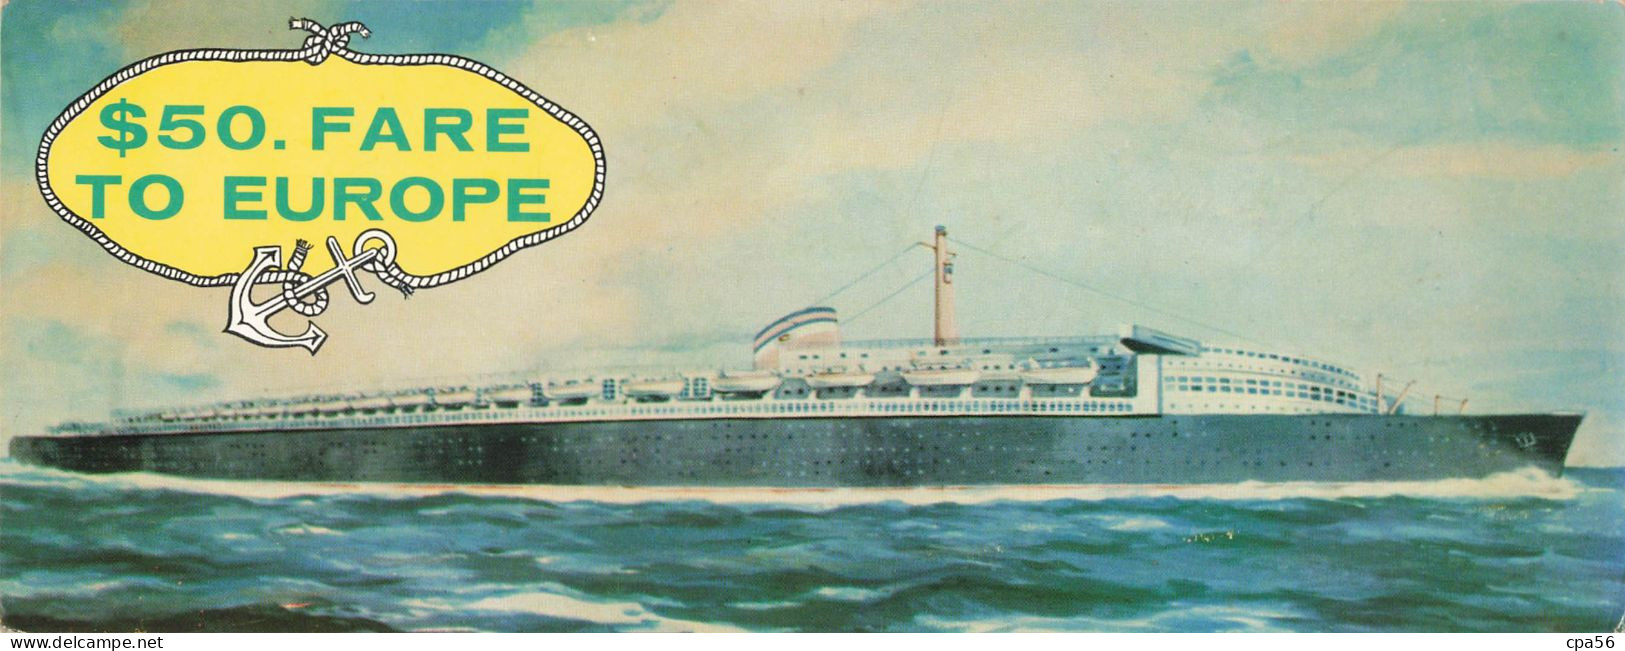 CARTE DOUBLE PANORAMIQUE PAQUEBOT - Publicité Sea Coach Transatlantic Lines - $50. FARE TO EUROPE - Hotel Dixie - Advertising